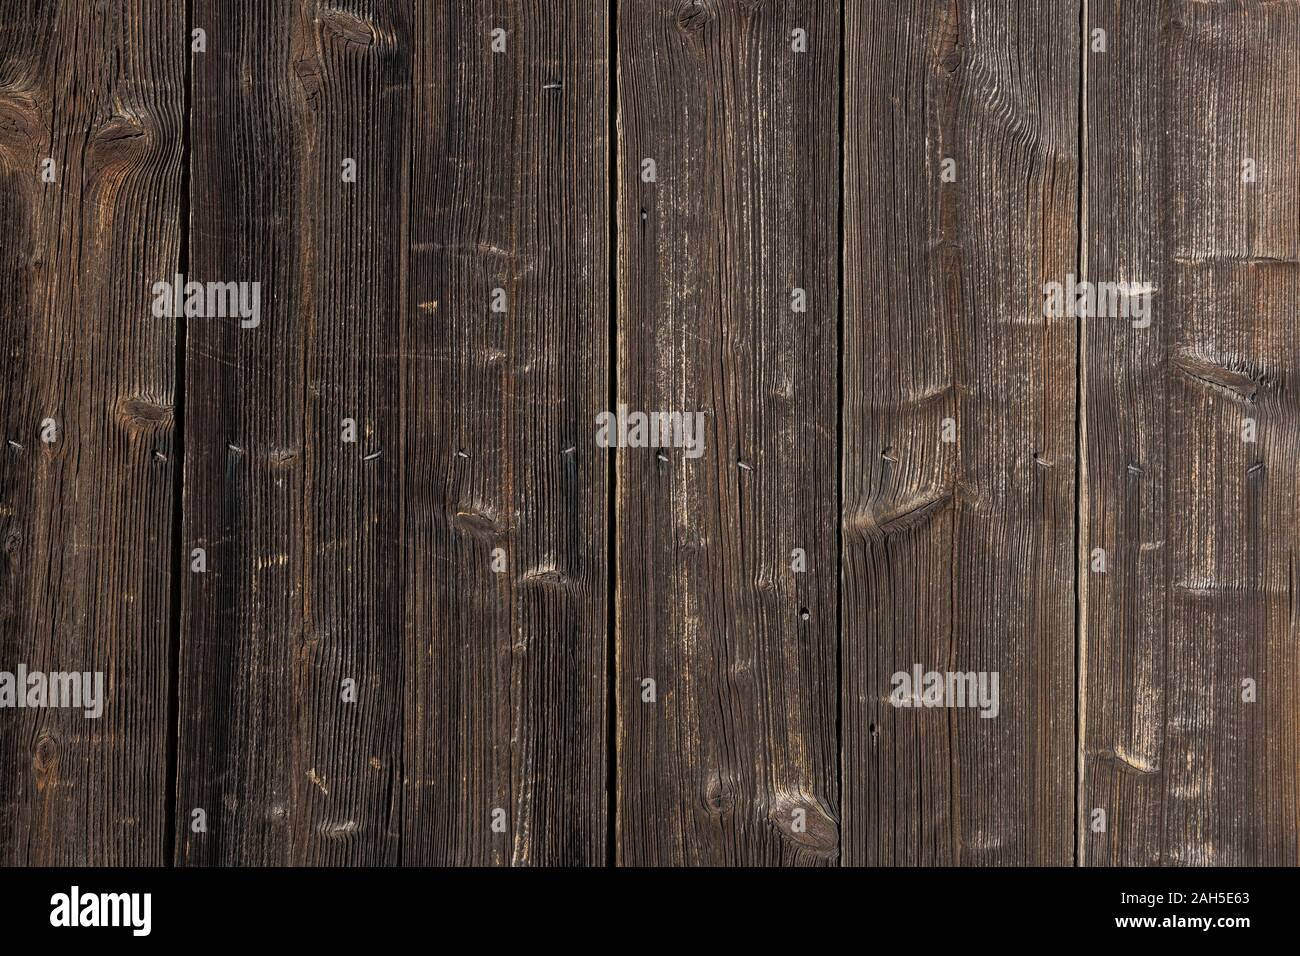 Very old wooden barn door, background, vintage Stock Photo